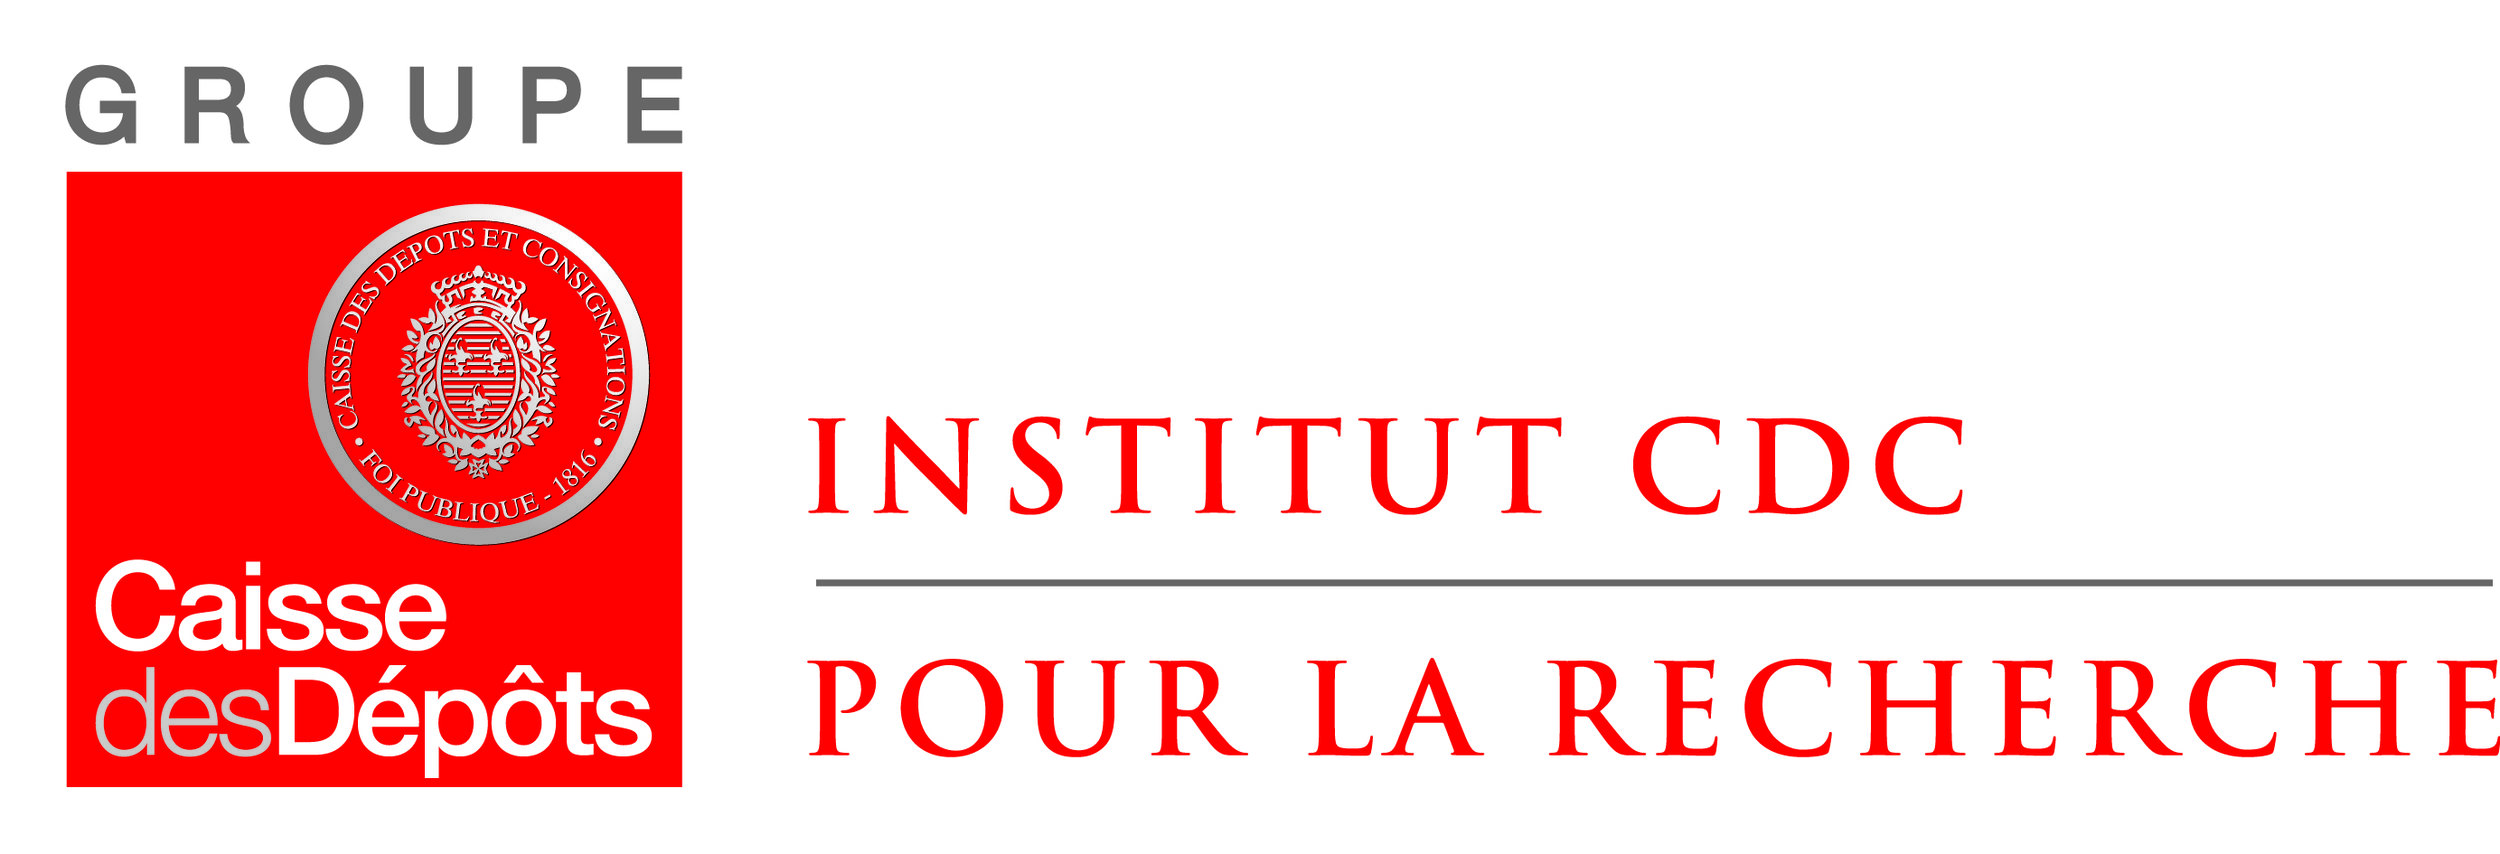 Logo Institut CDC quadri.jpg